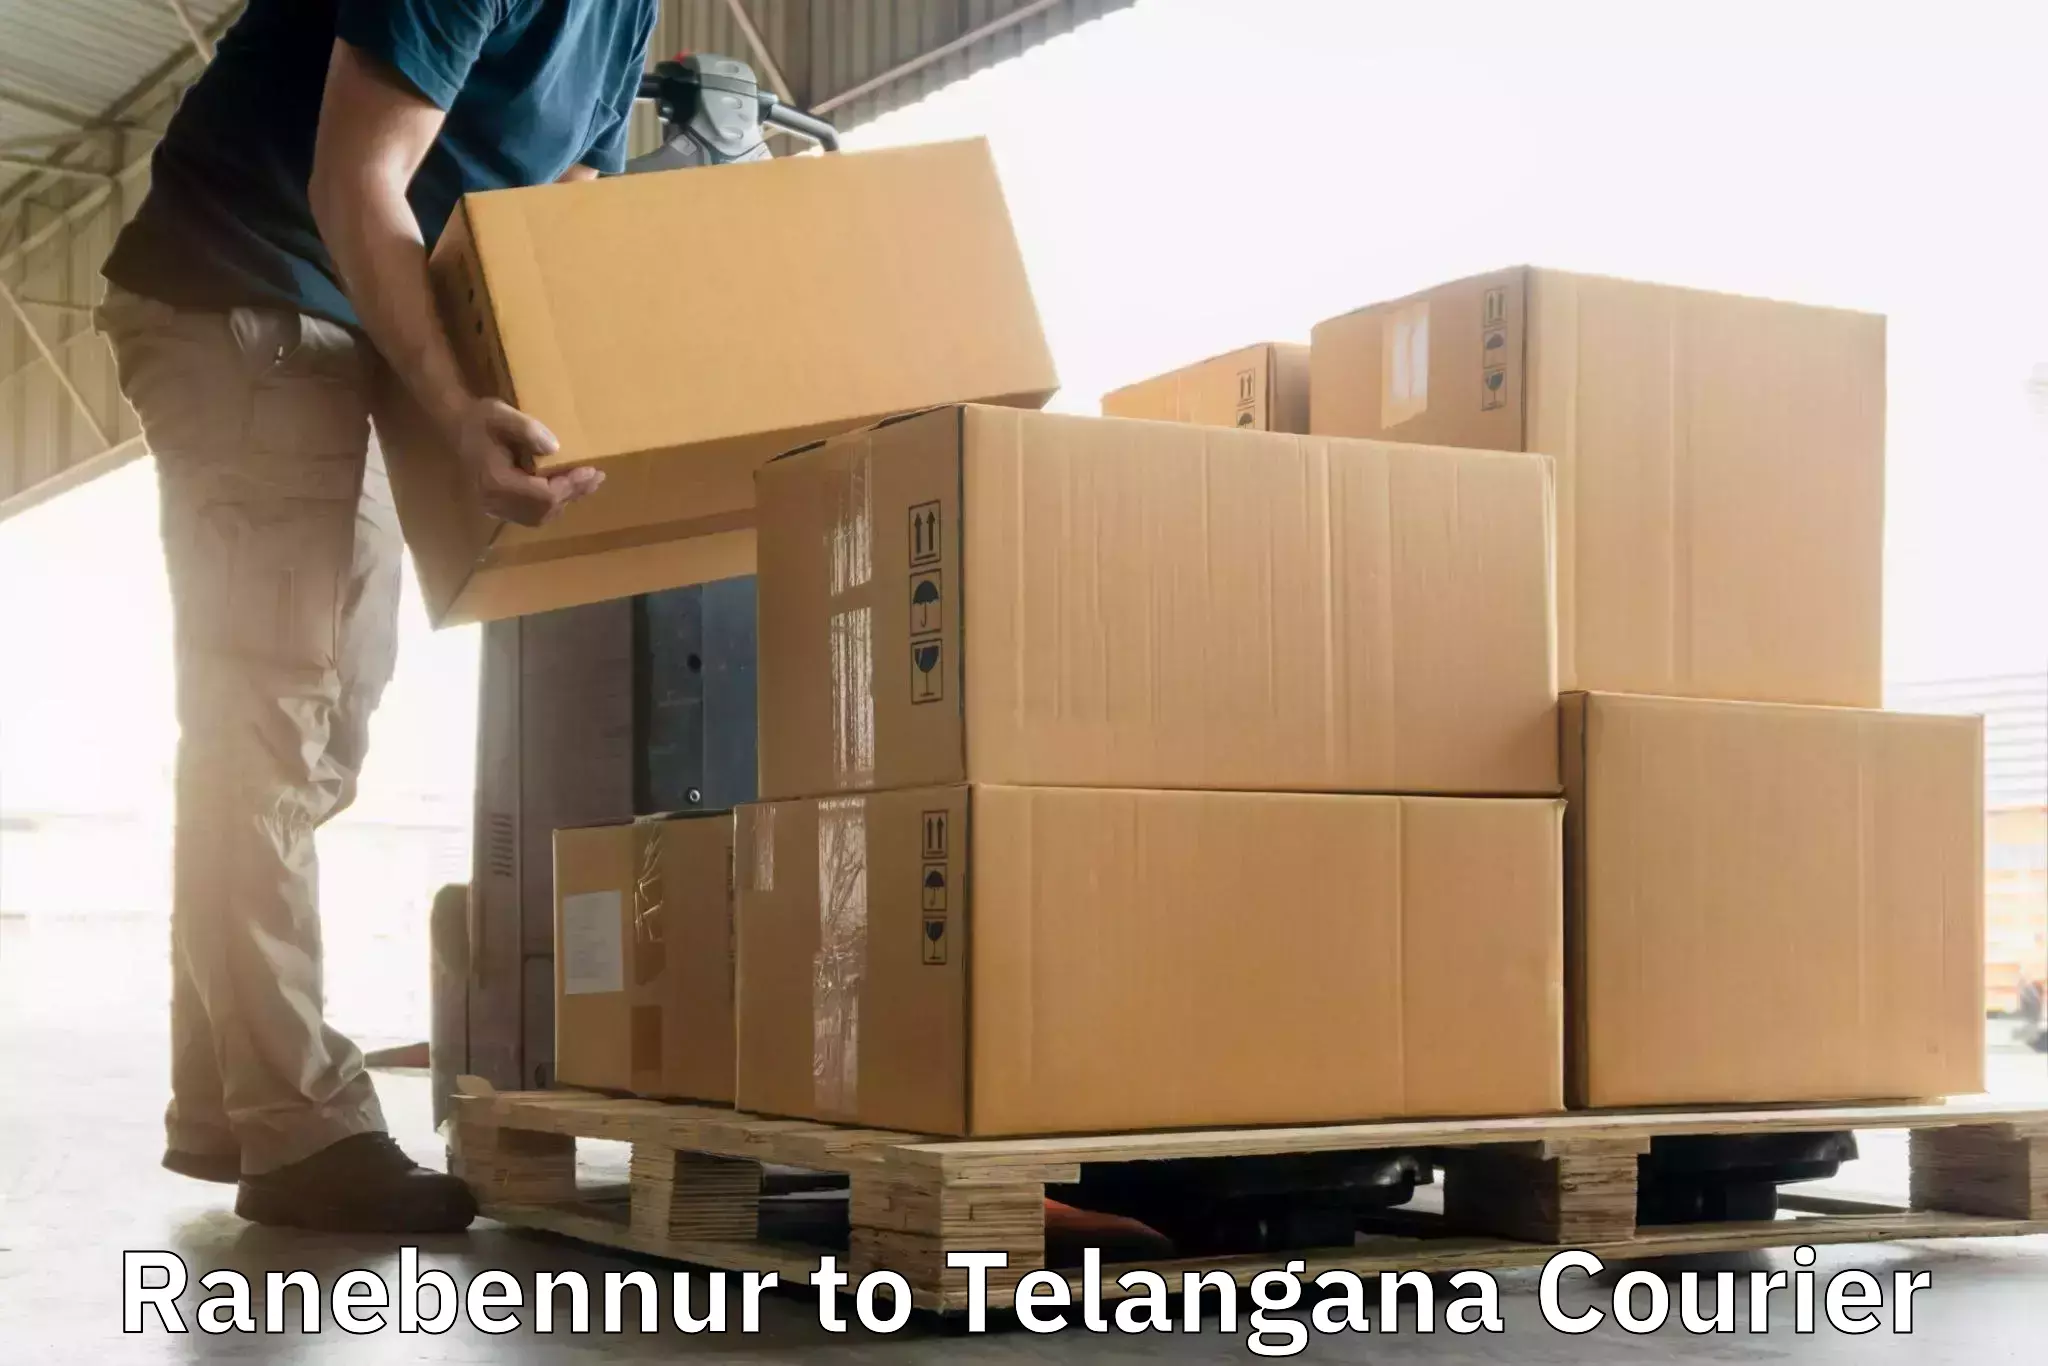 Specialized courier services Ranebennur to Achampet